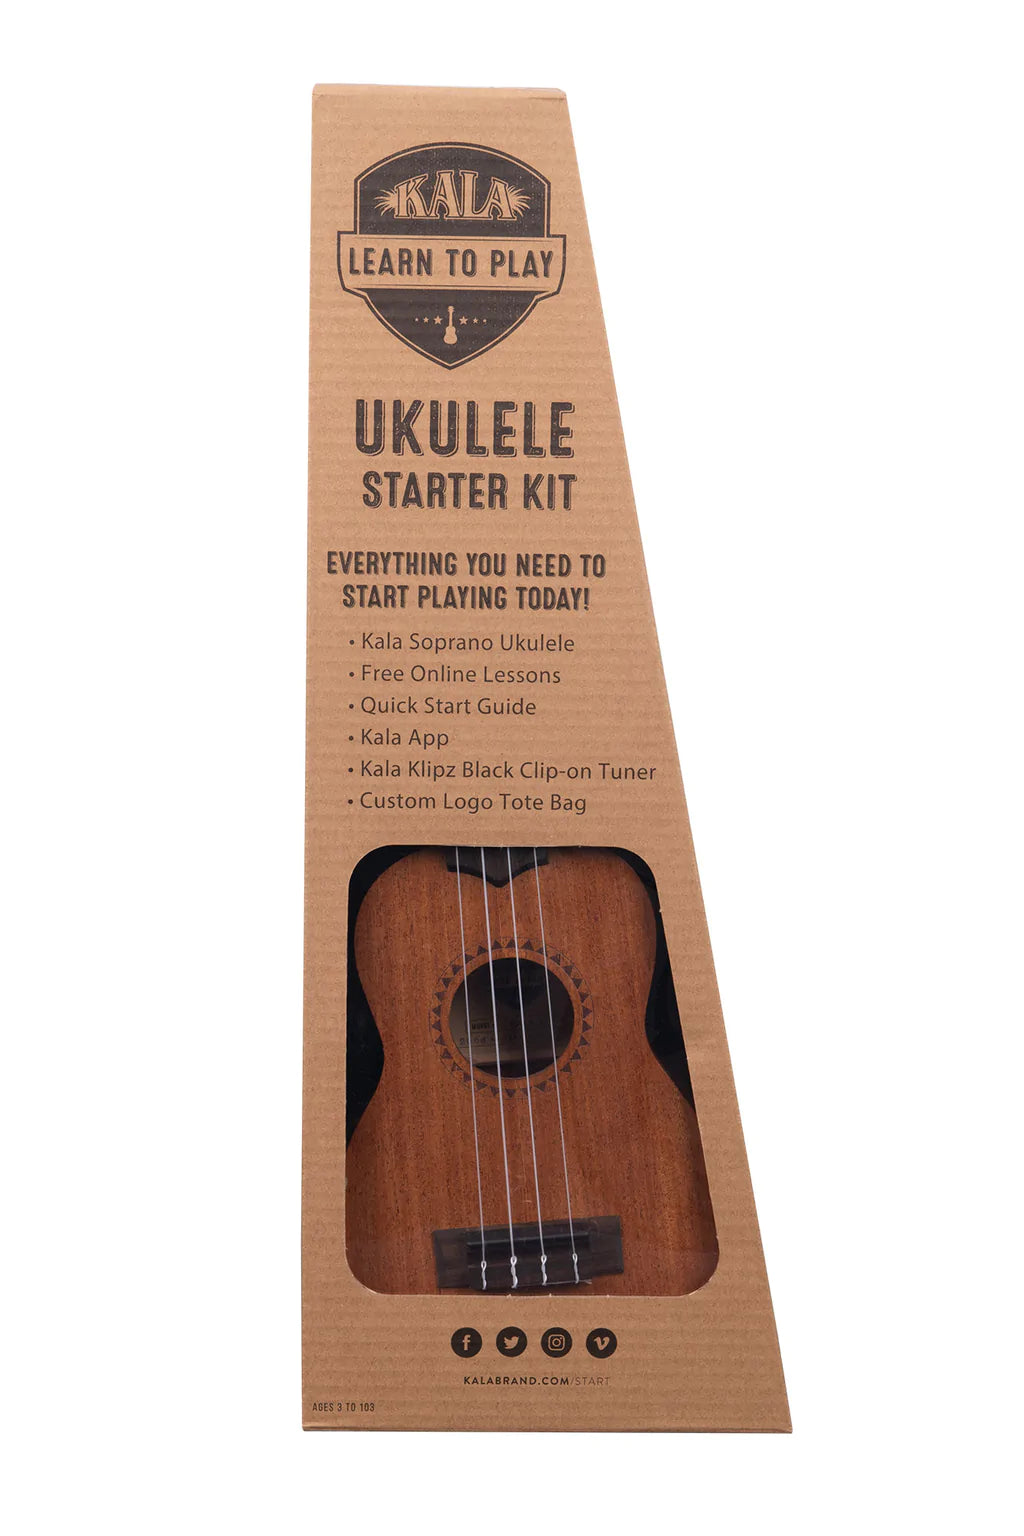 Arne hval dessert Kala Learn To Play Ukulele Soprano Starter Kit – Kitty Hawk Kites Online  Store